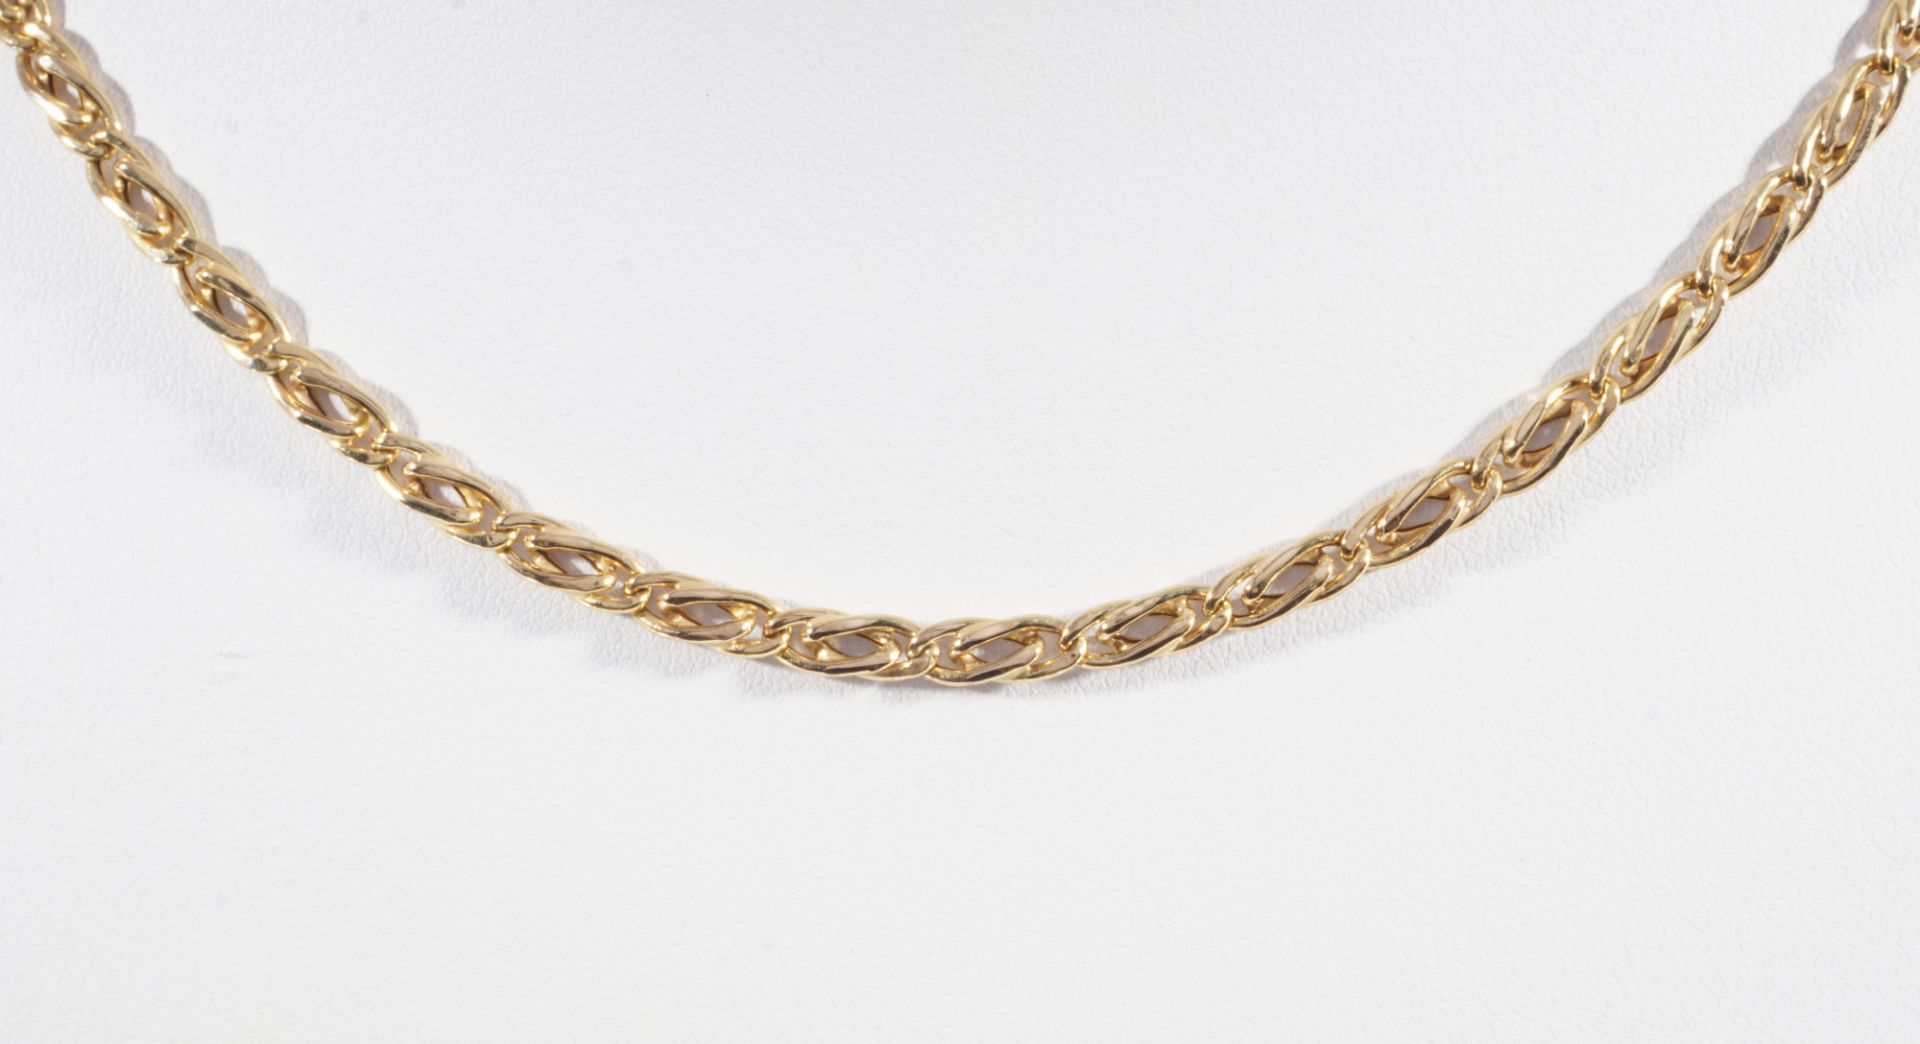 333 gold curb bracelet / necklace, 8K Gold Panzerkette / Halskette, - Image 2 of 4